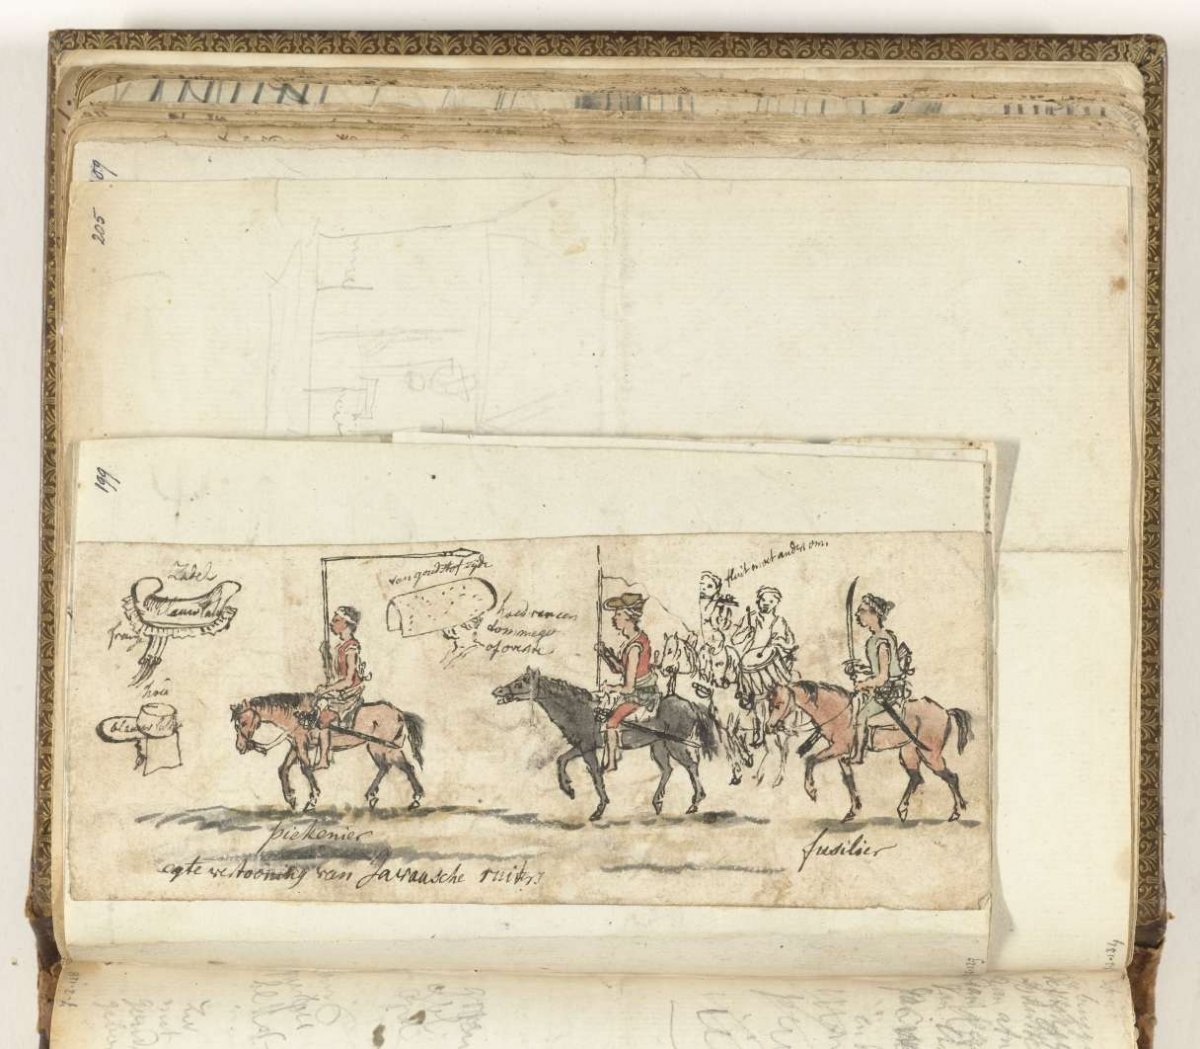 Javaanse cavalerie, Jan Brandes, 1779 - 1785